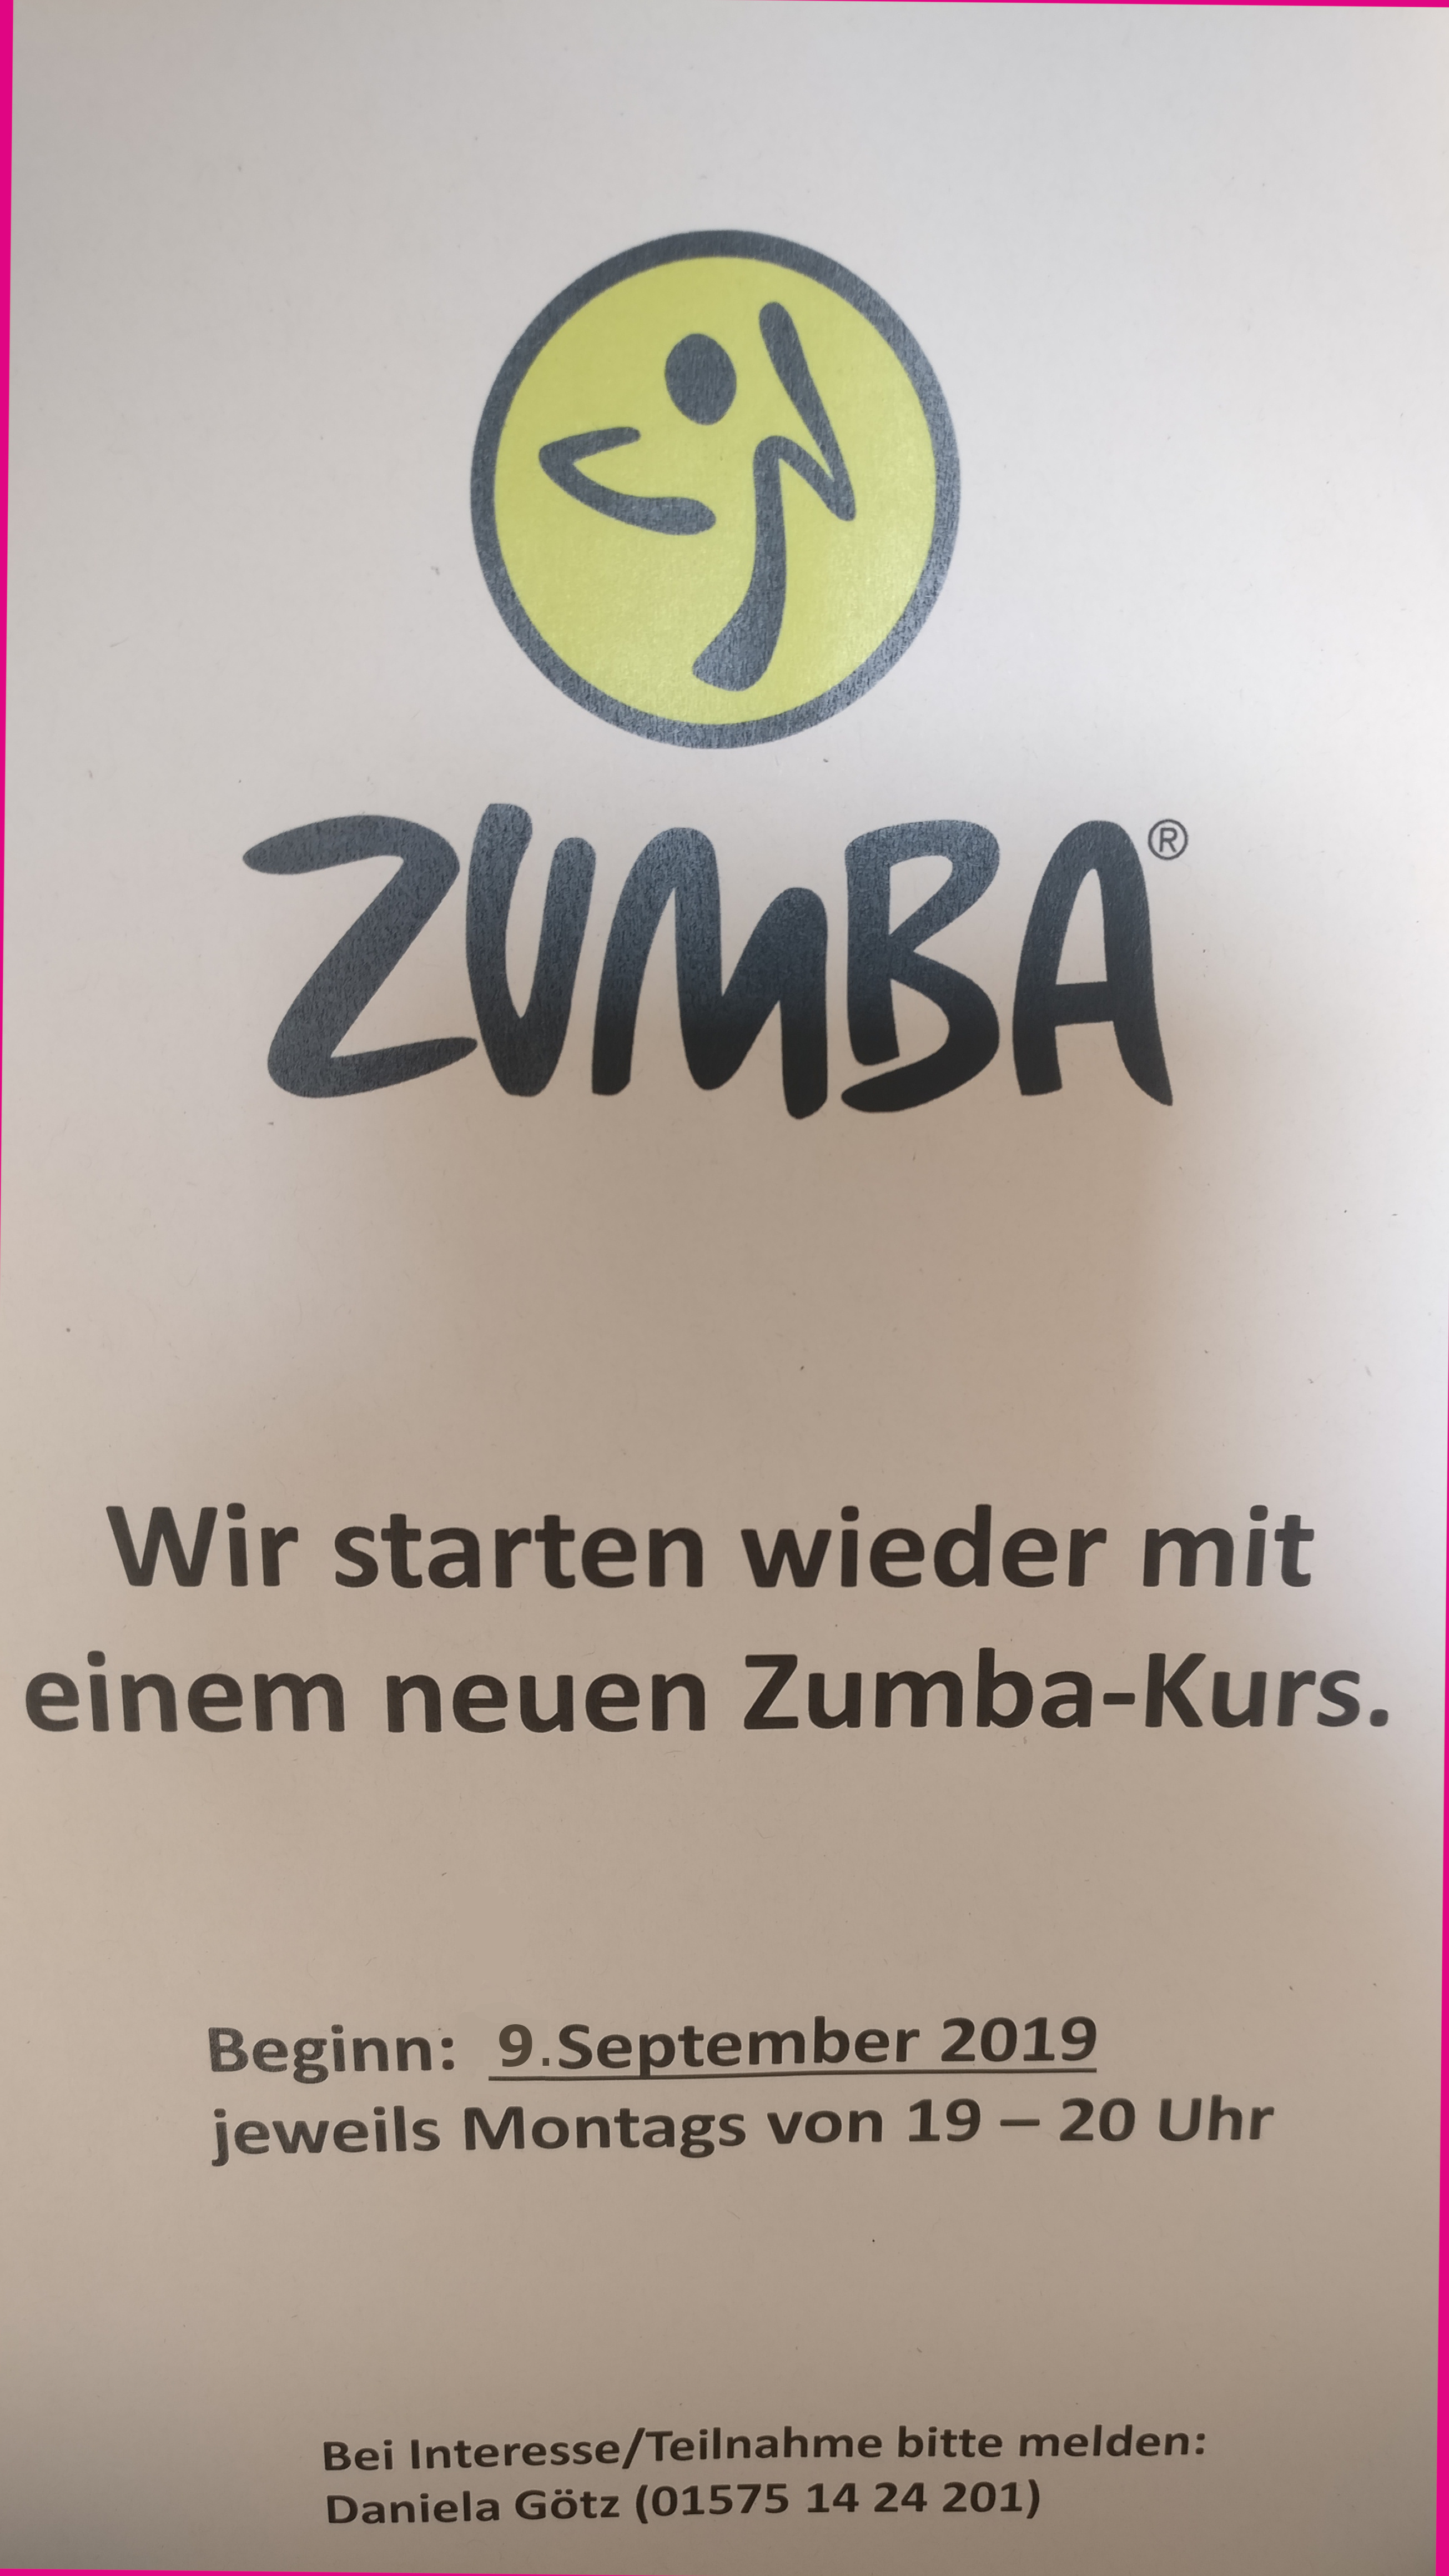 Zumba Kurs startet am 9. September